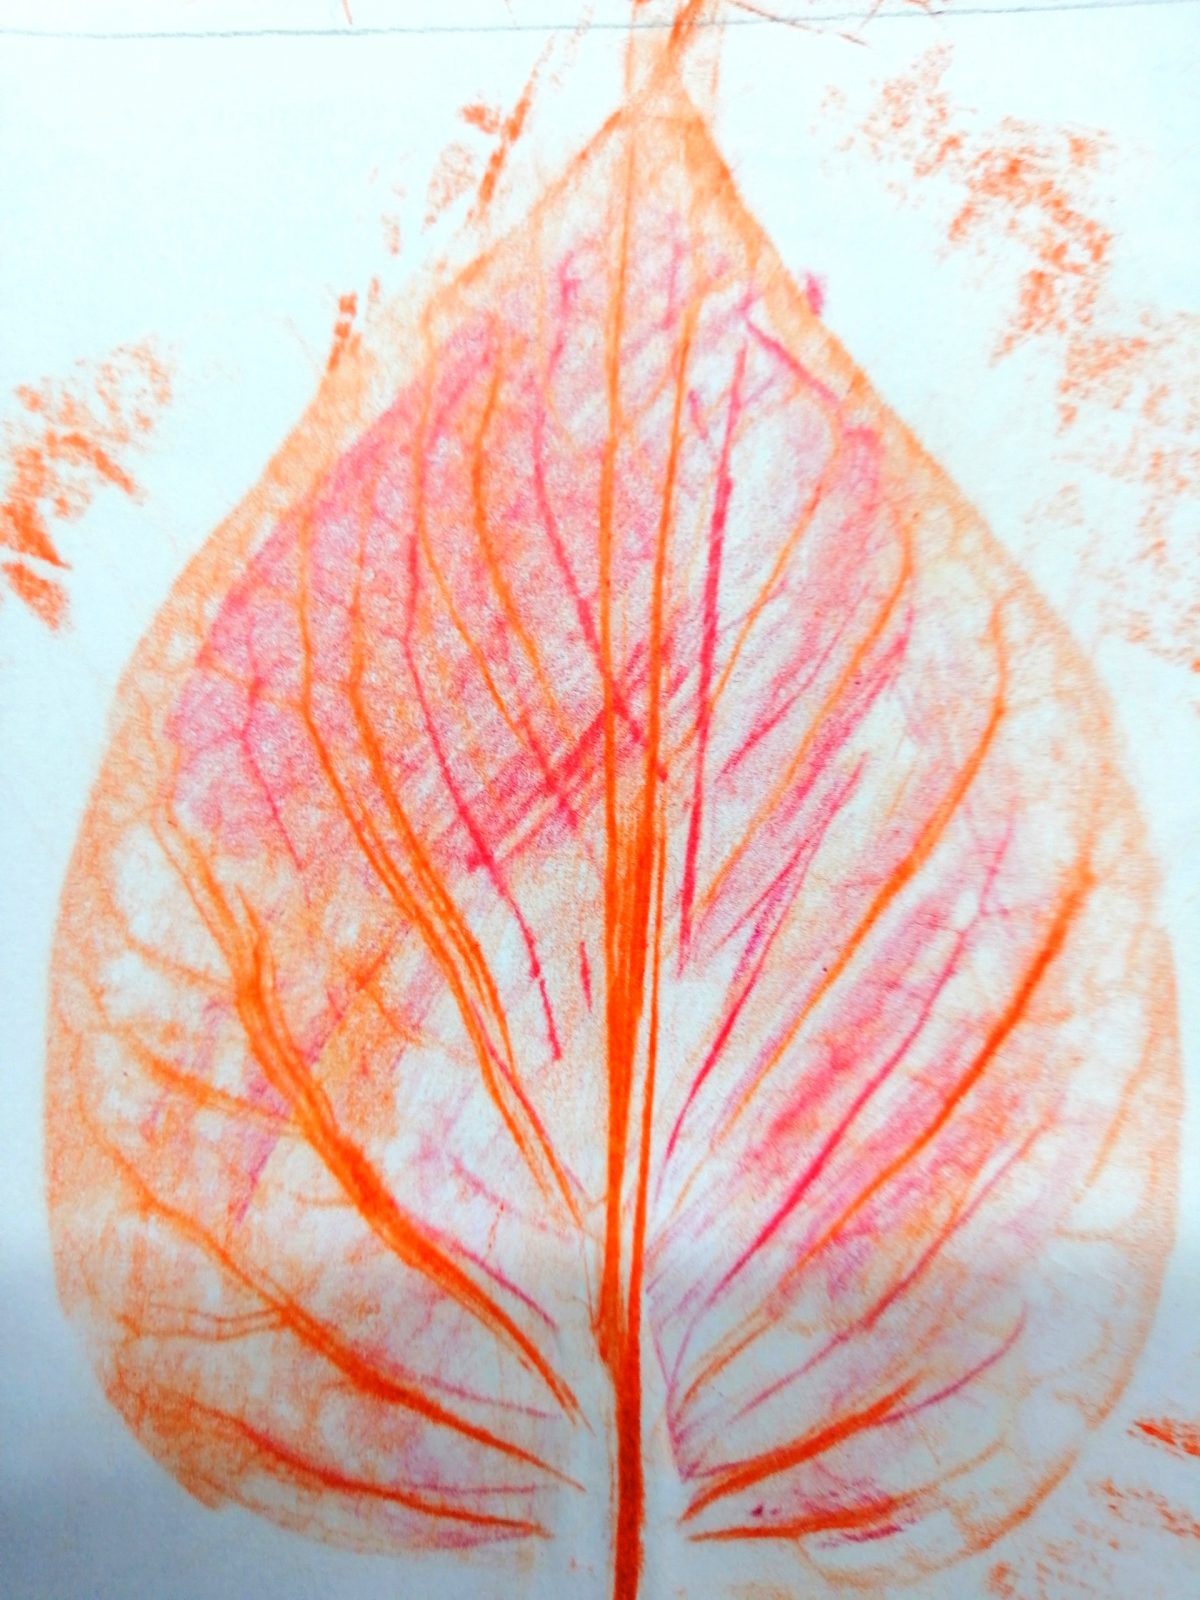 Kompozycja plastyczna struktury fragmentów jesiennych liści w układzie centralnym. Praca wykonana w technice frotażu z użyciem barw ciepłych.